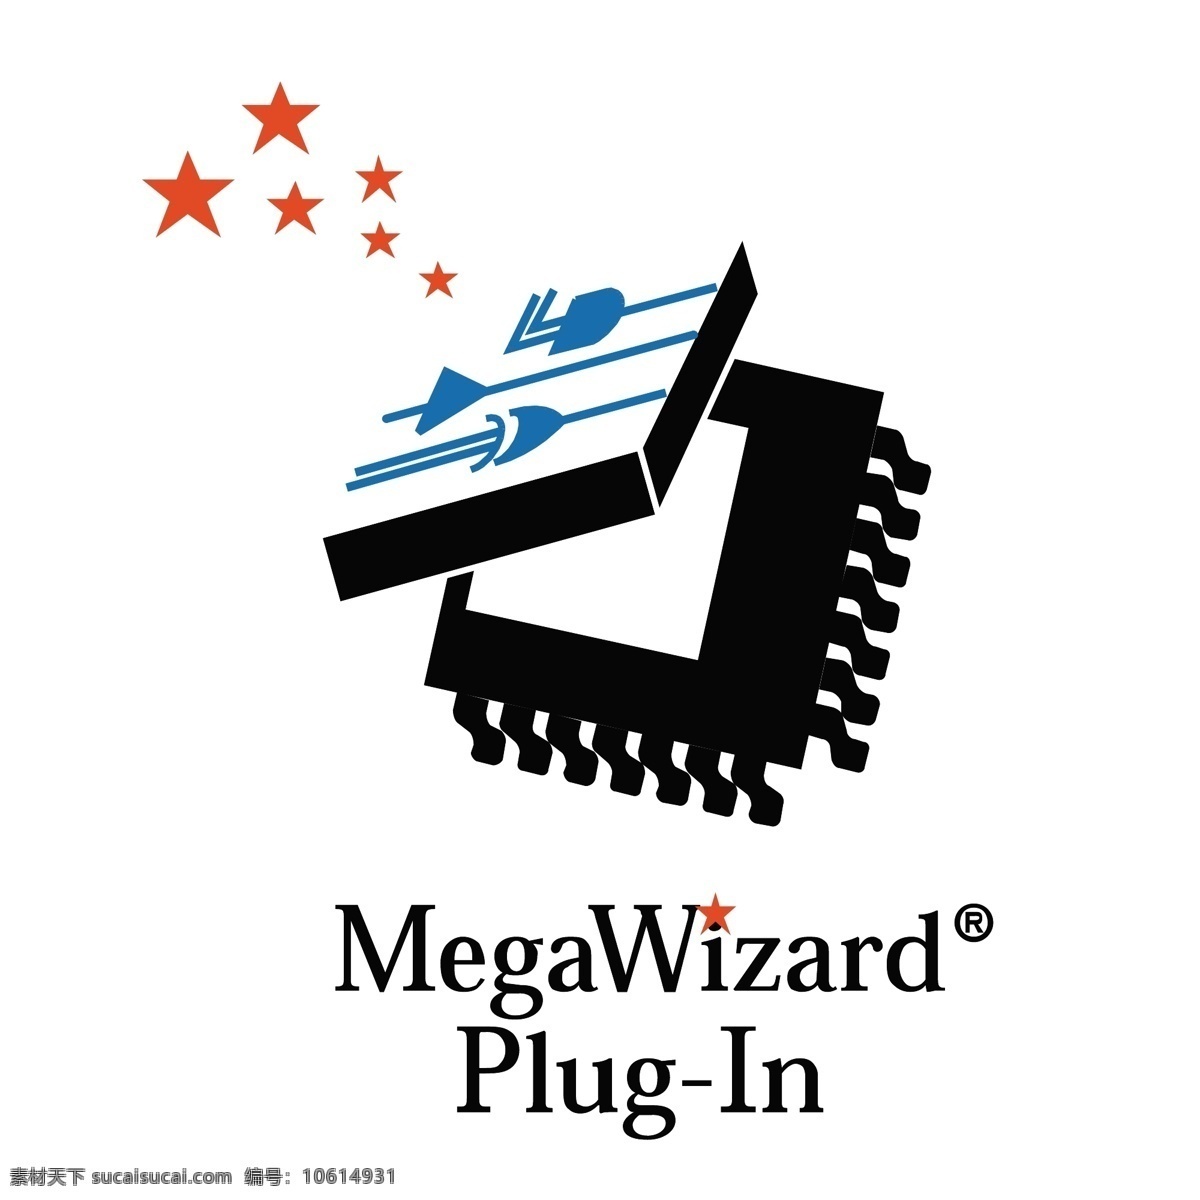 megawizard 插件 标识 公司 免费 品牌 品牌标识 商标 矢量标志下载 免费矢量标识 矢量 psd源文件 logo设计